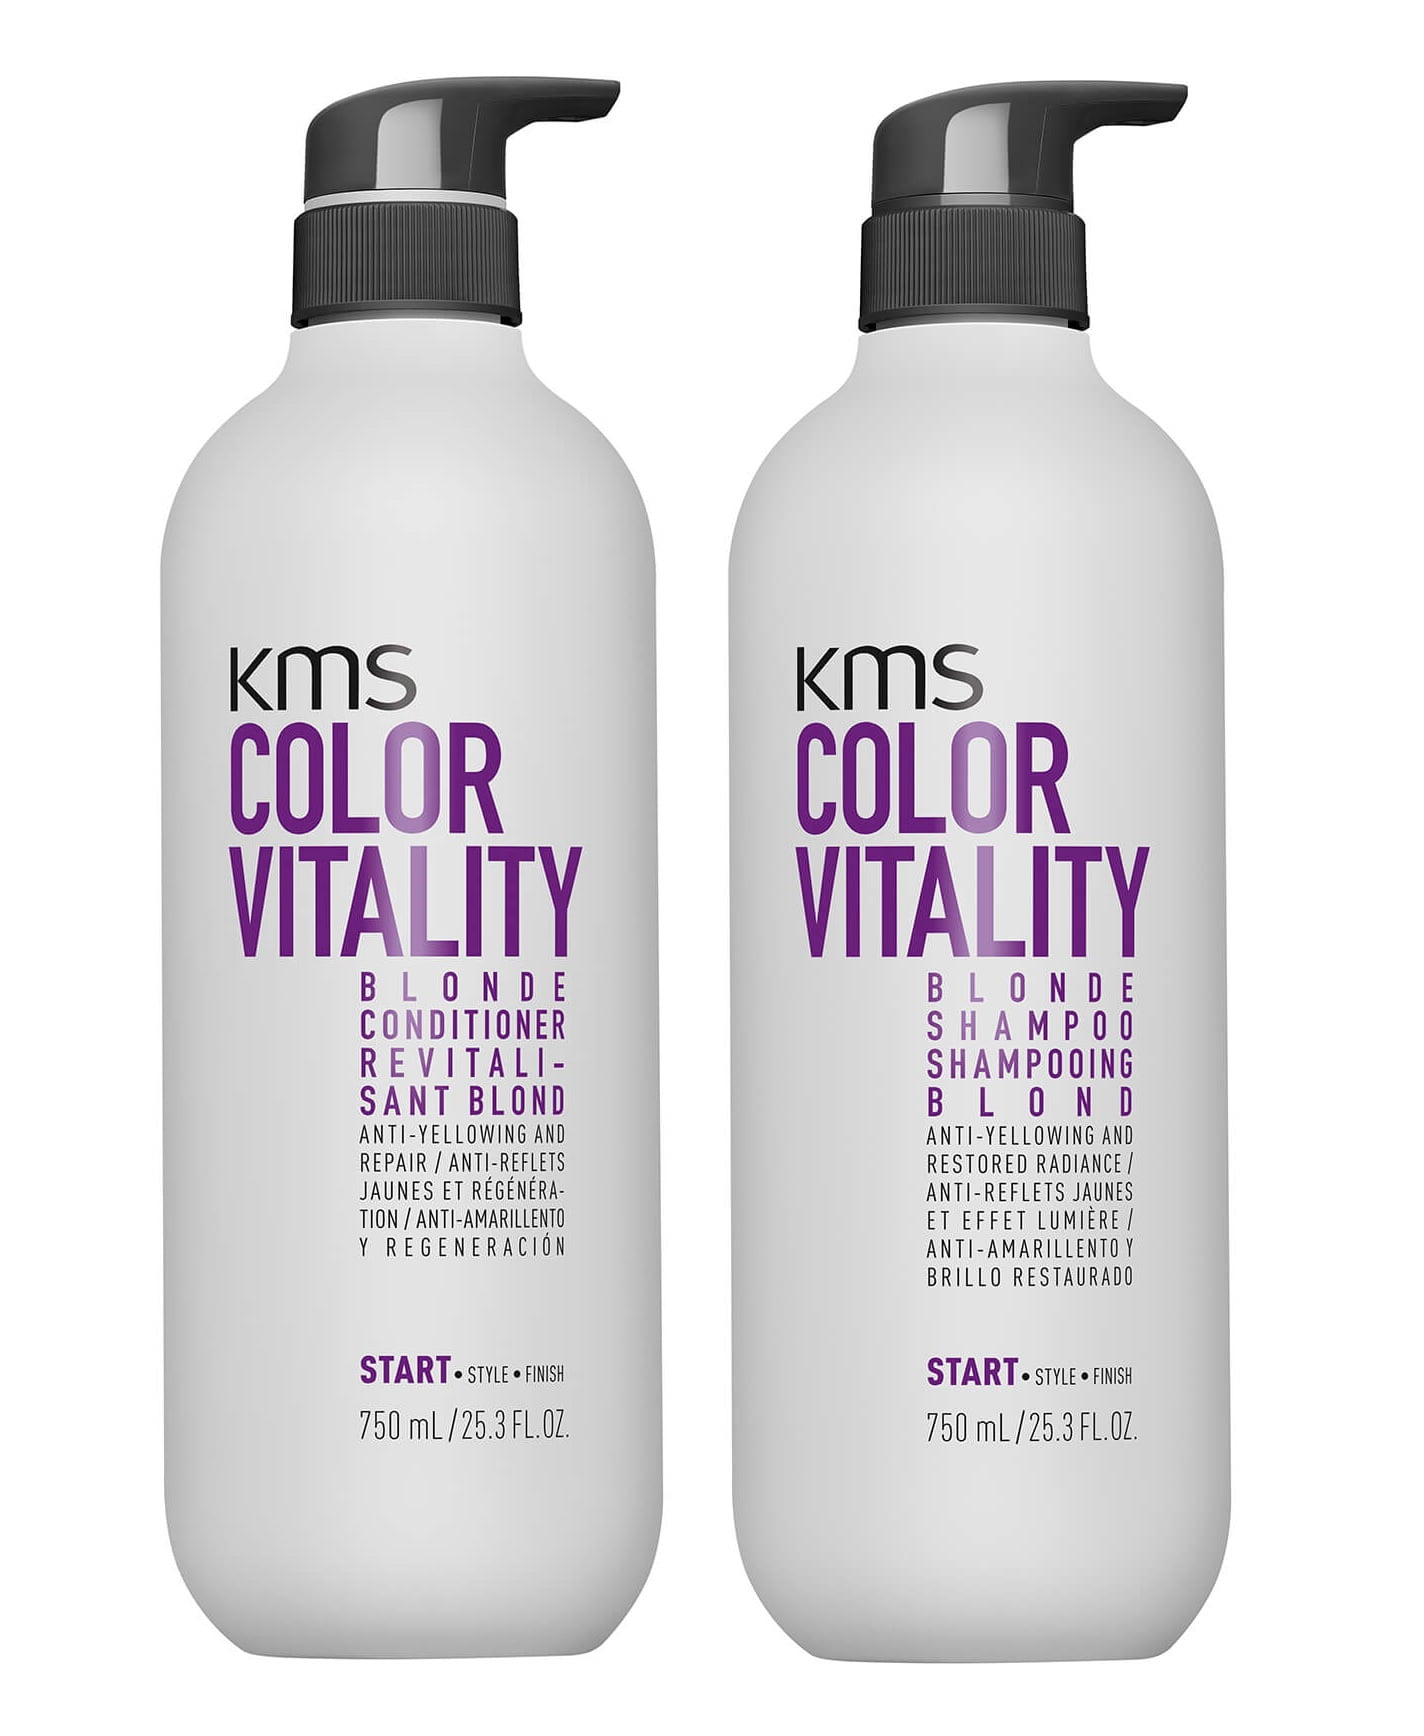 KMS California Color Vitality Blonde Shampoo & Duo 25.3oz Walmart.com